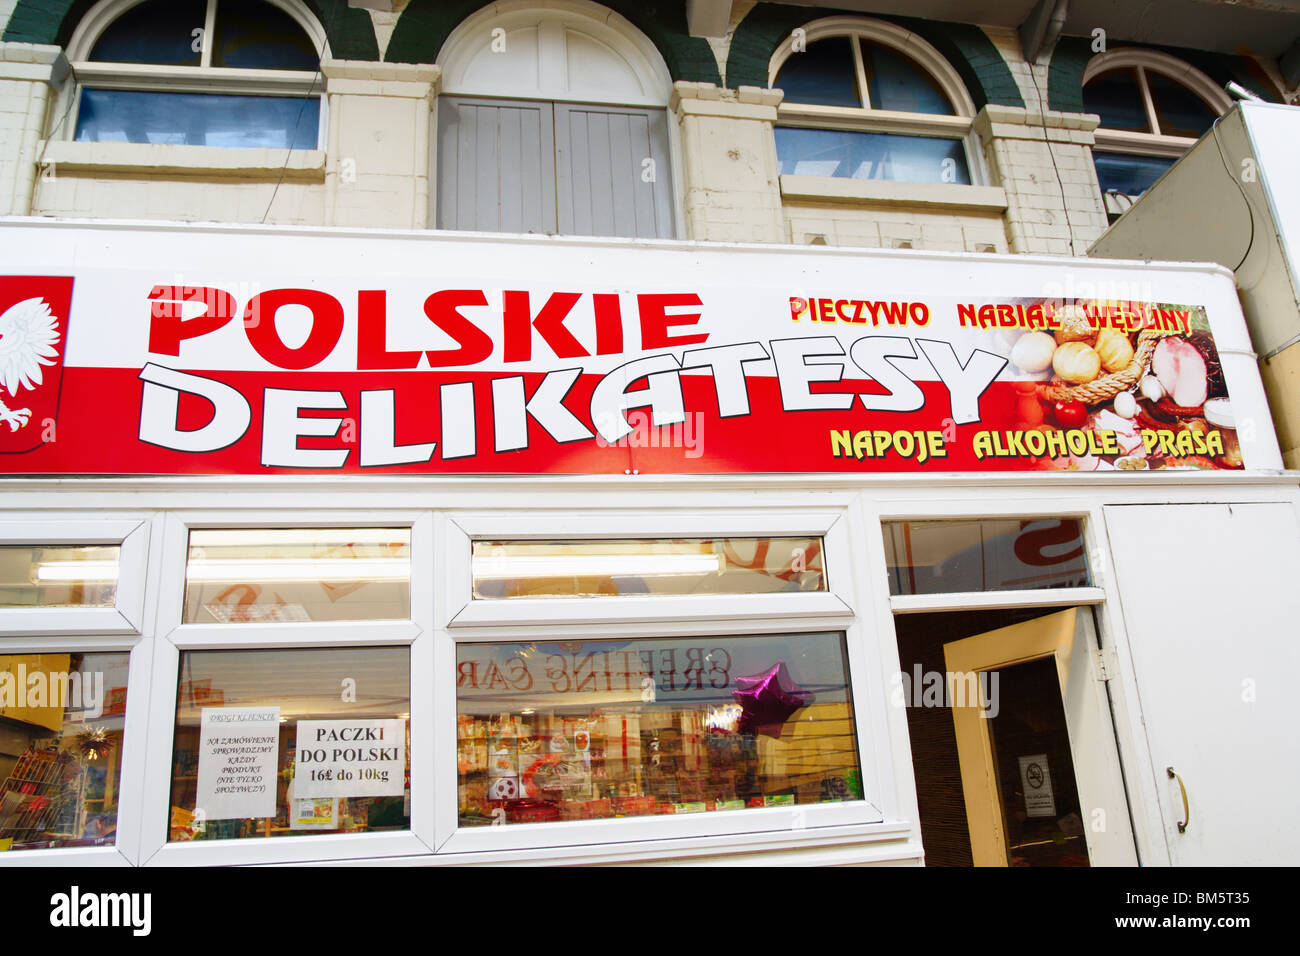 Polish deli shop in Kirkgate indoor market in Leeds, Yorkshire, England Stock Photo